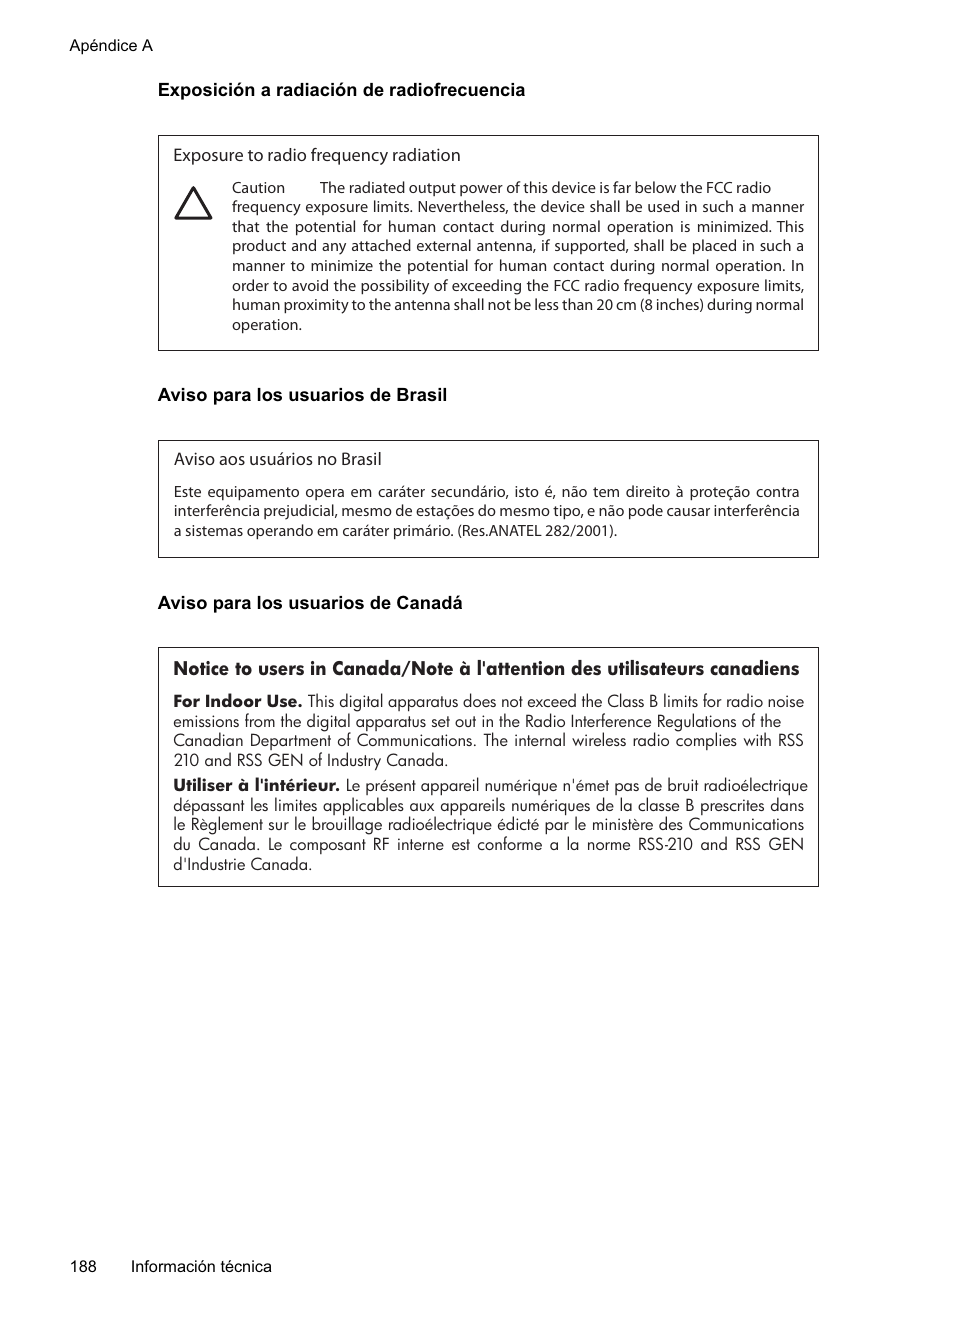 Exposición a radiación de radiofrecuencia, Aviso para los usuarios de brasil, Aviso para los usuarios de canadá | HP Officejet Pro 8500A Manual del usuario | Página 192 / 264